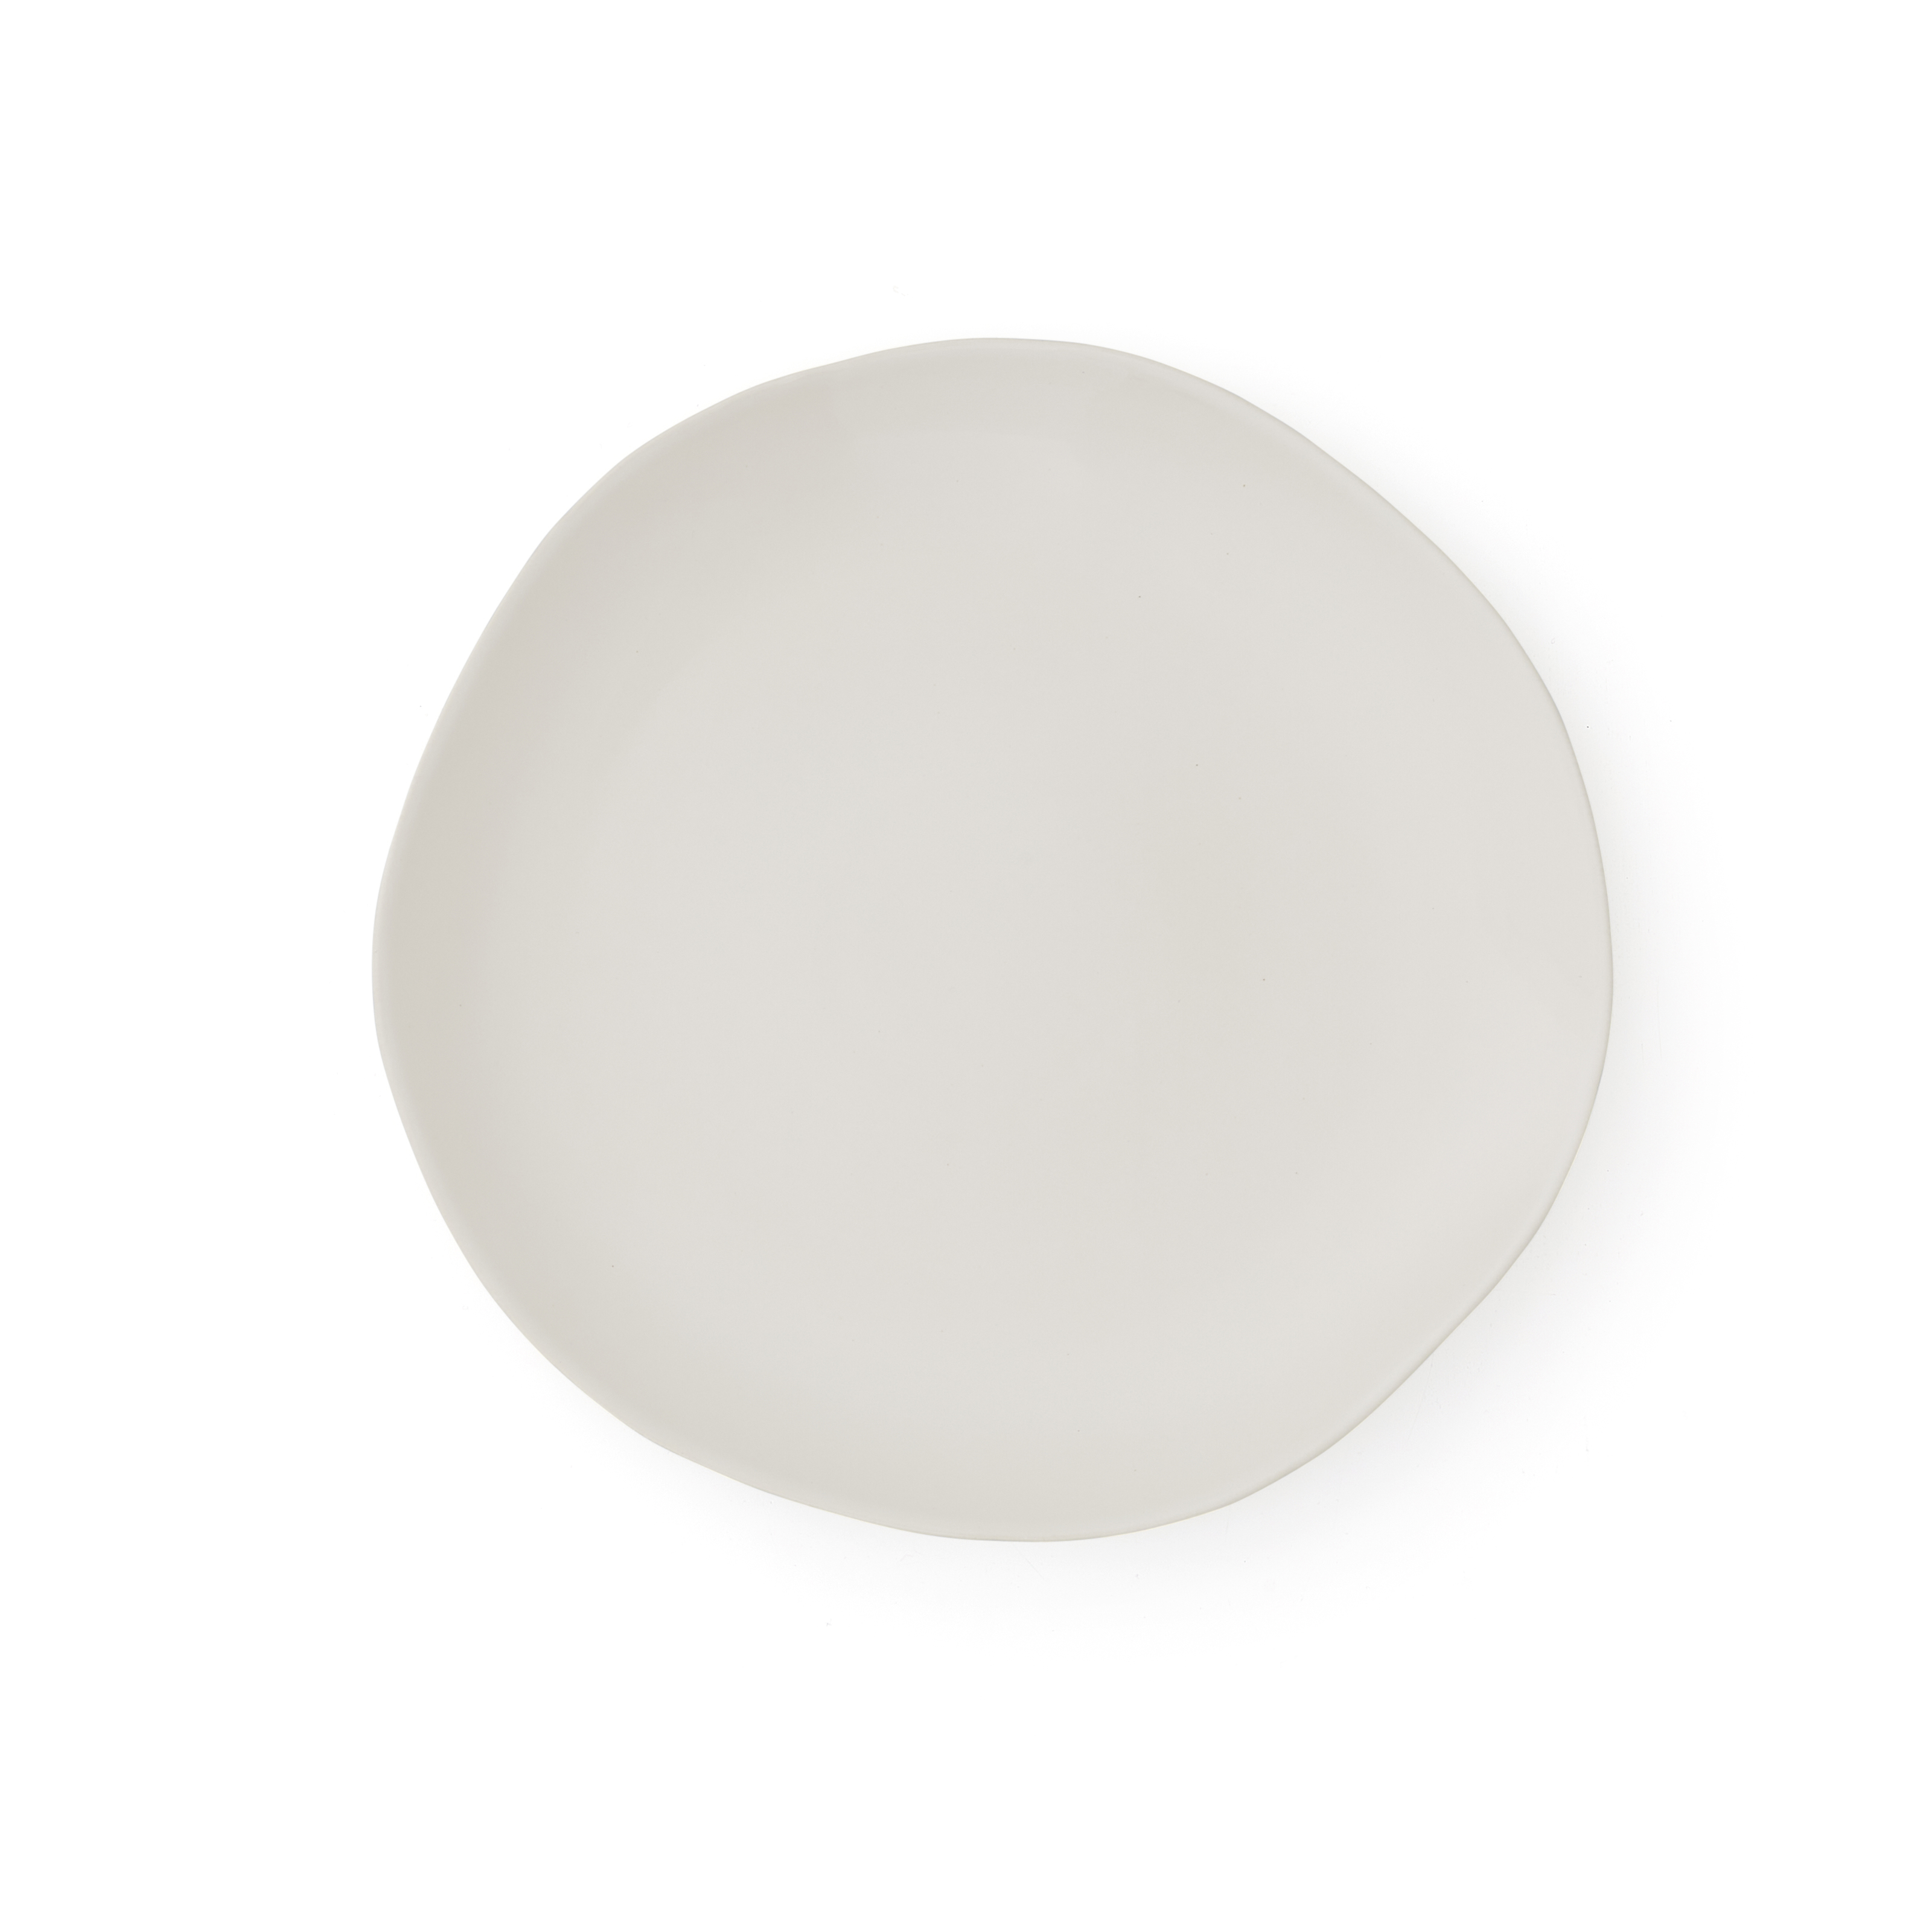 Sophie Conran Arbor 4 Dinner Plates, Cream image number null